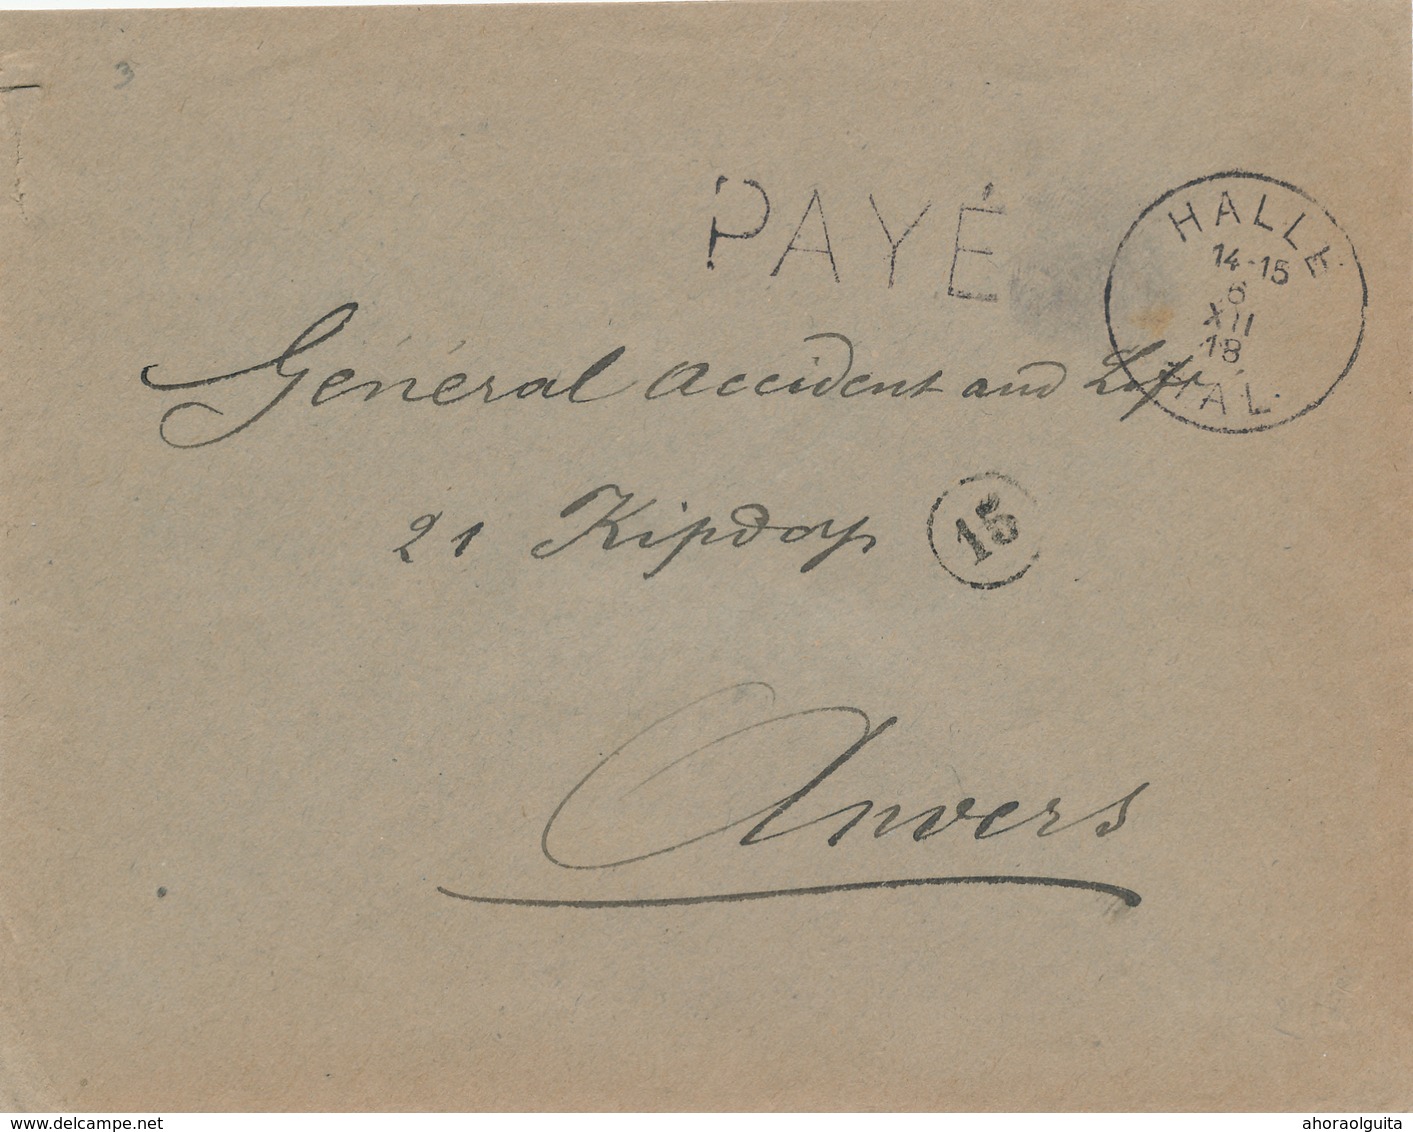 876/28 - FORTUNES 1919 - Enveloppe Griffe PAYE 0.10 Et Cachet HALLE 6 XII 18 - Expéd. Vander Beck - Noodstempels (1919)